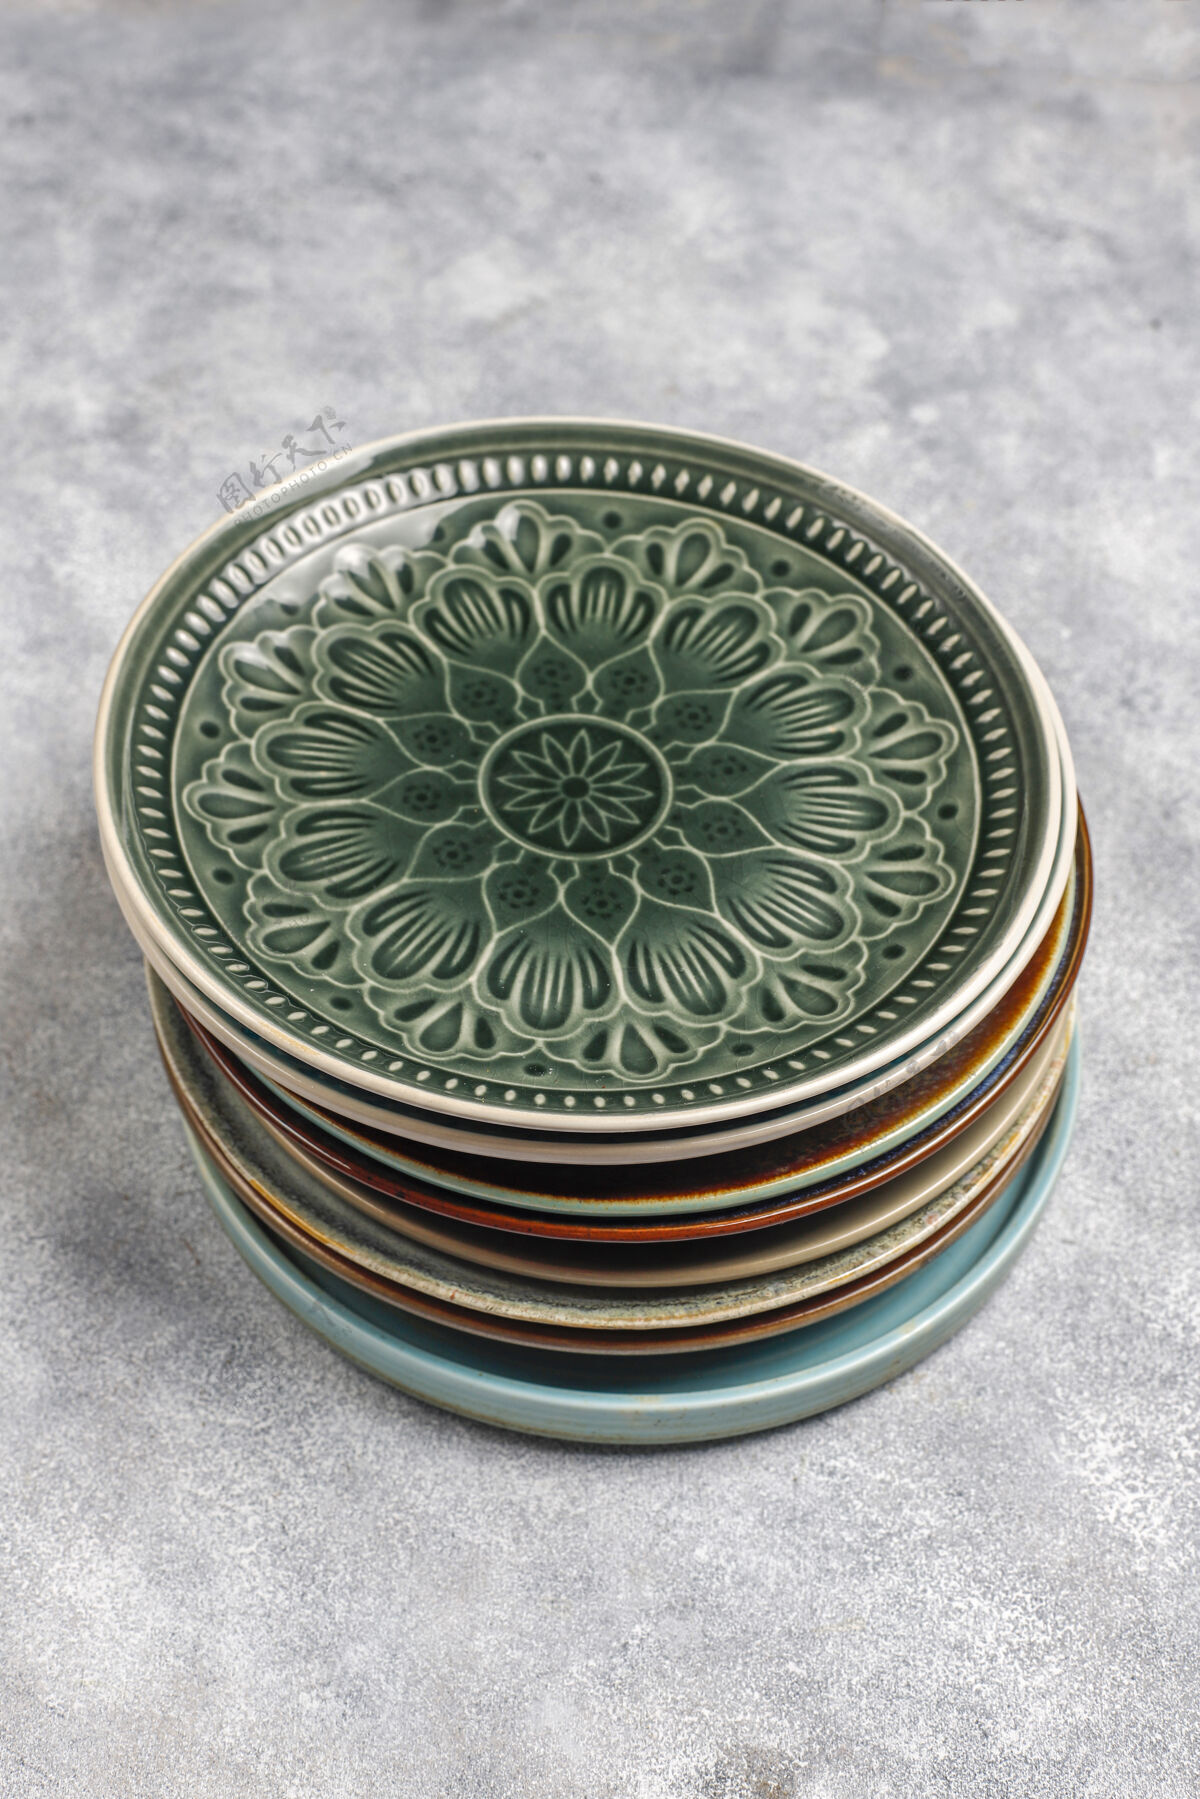 空不同的陶瓷空盘子和碗餐具圆形圆形